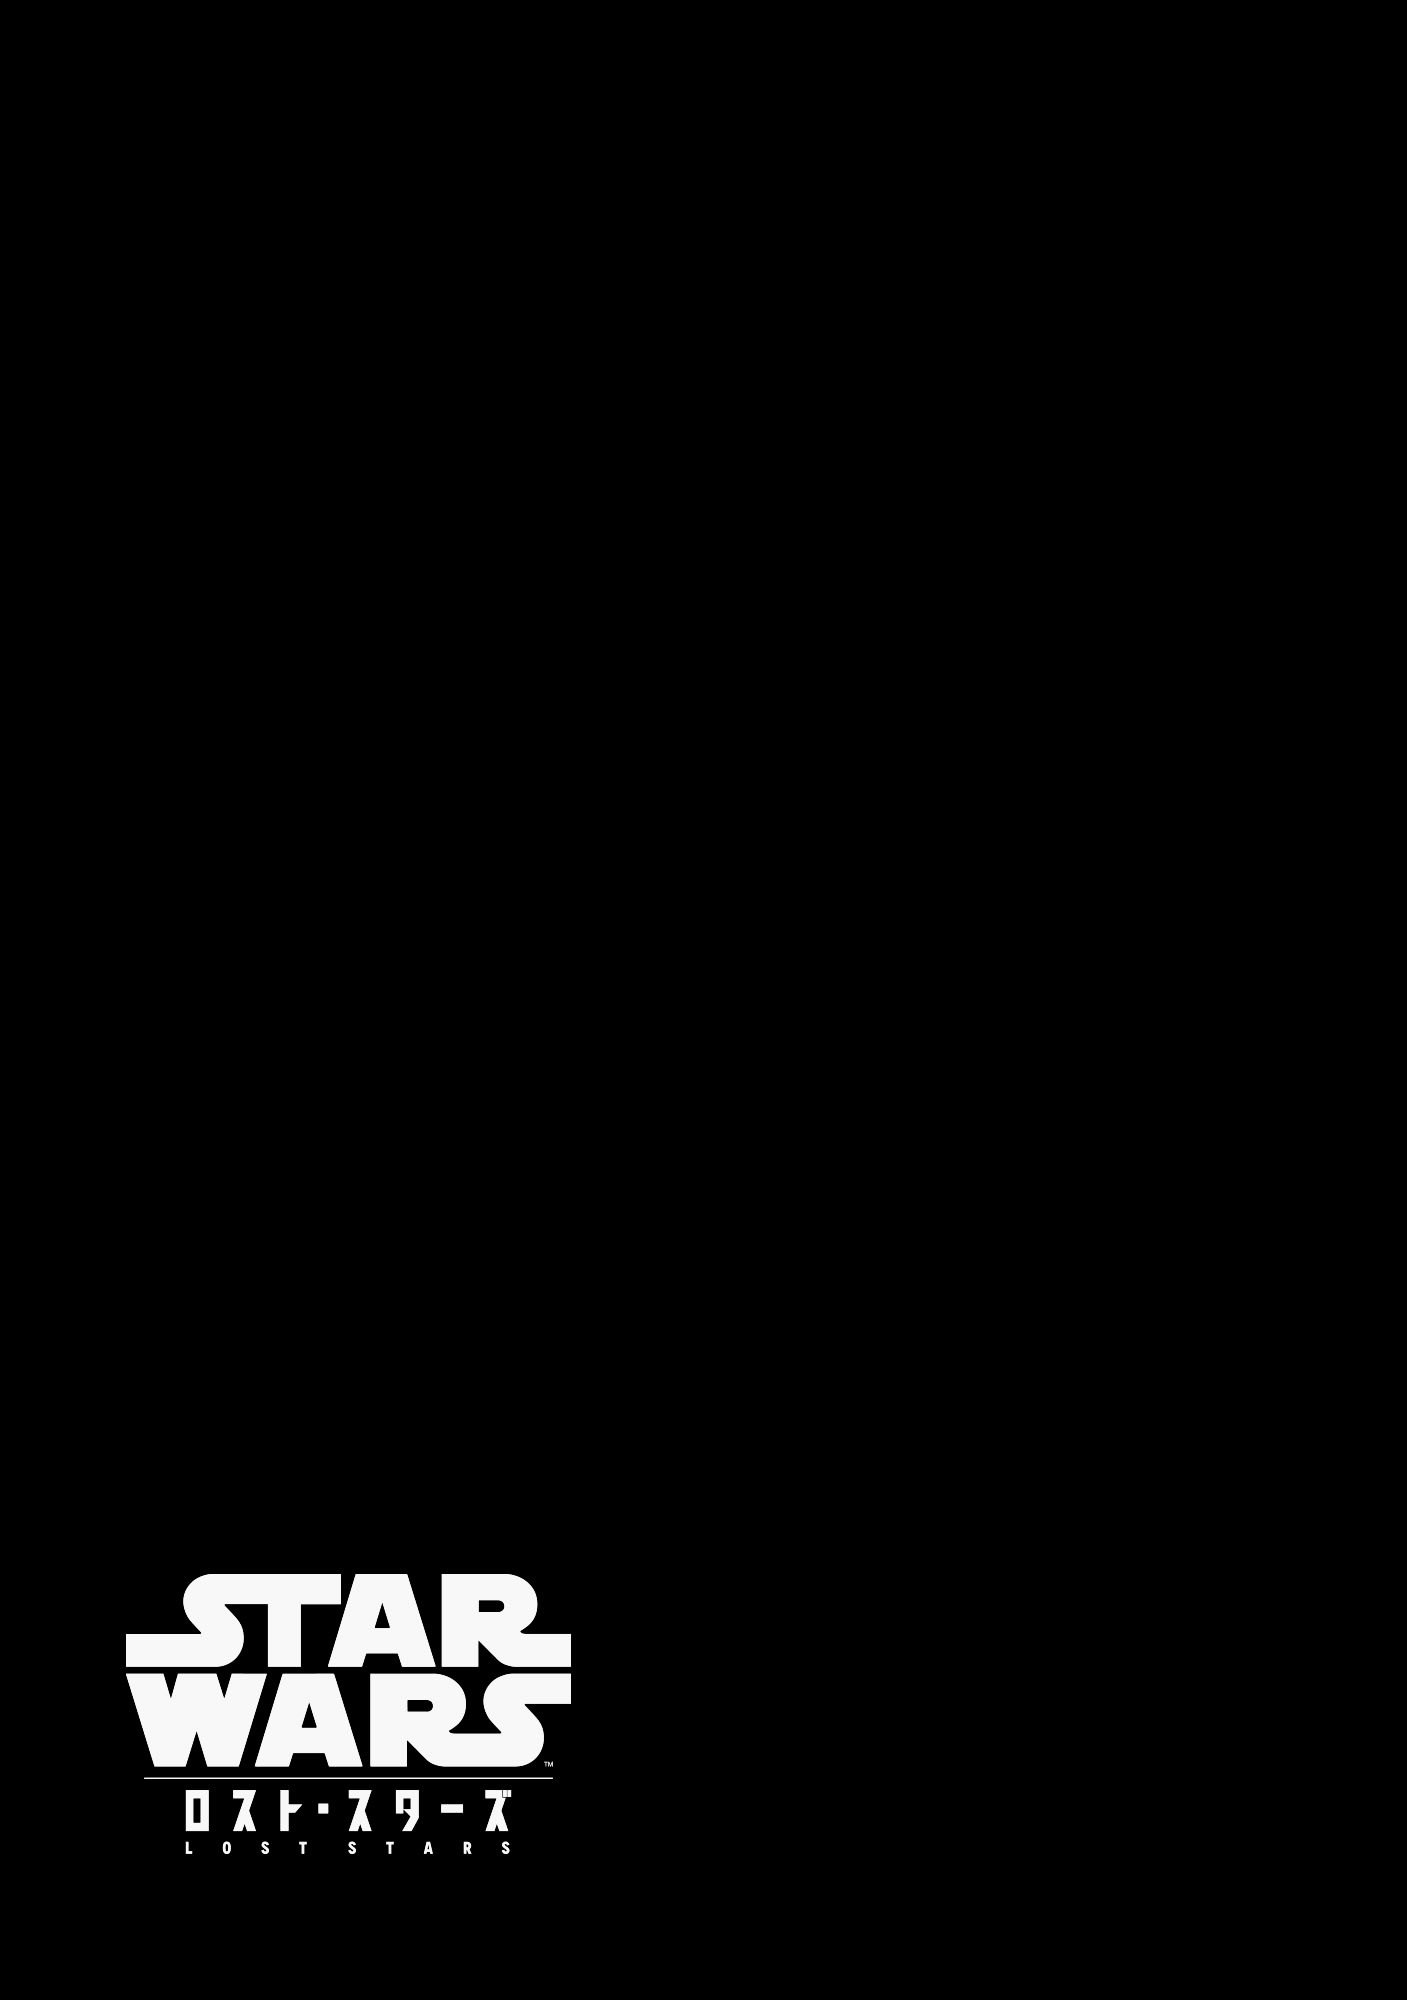 Star Wars Lost Stars 3 26